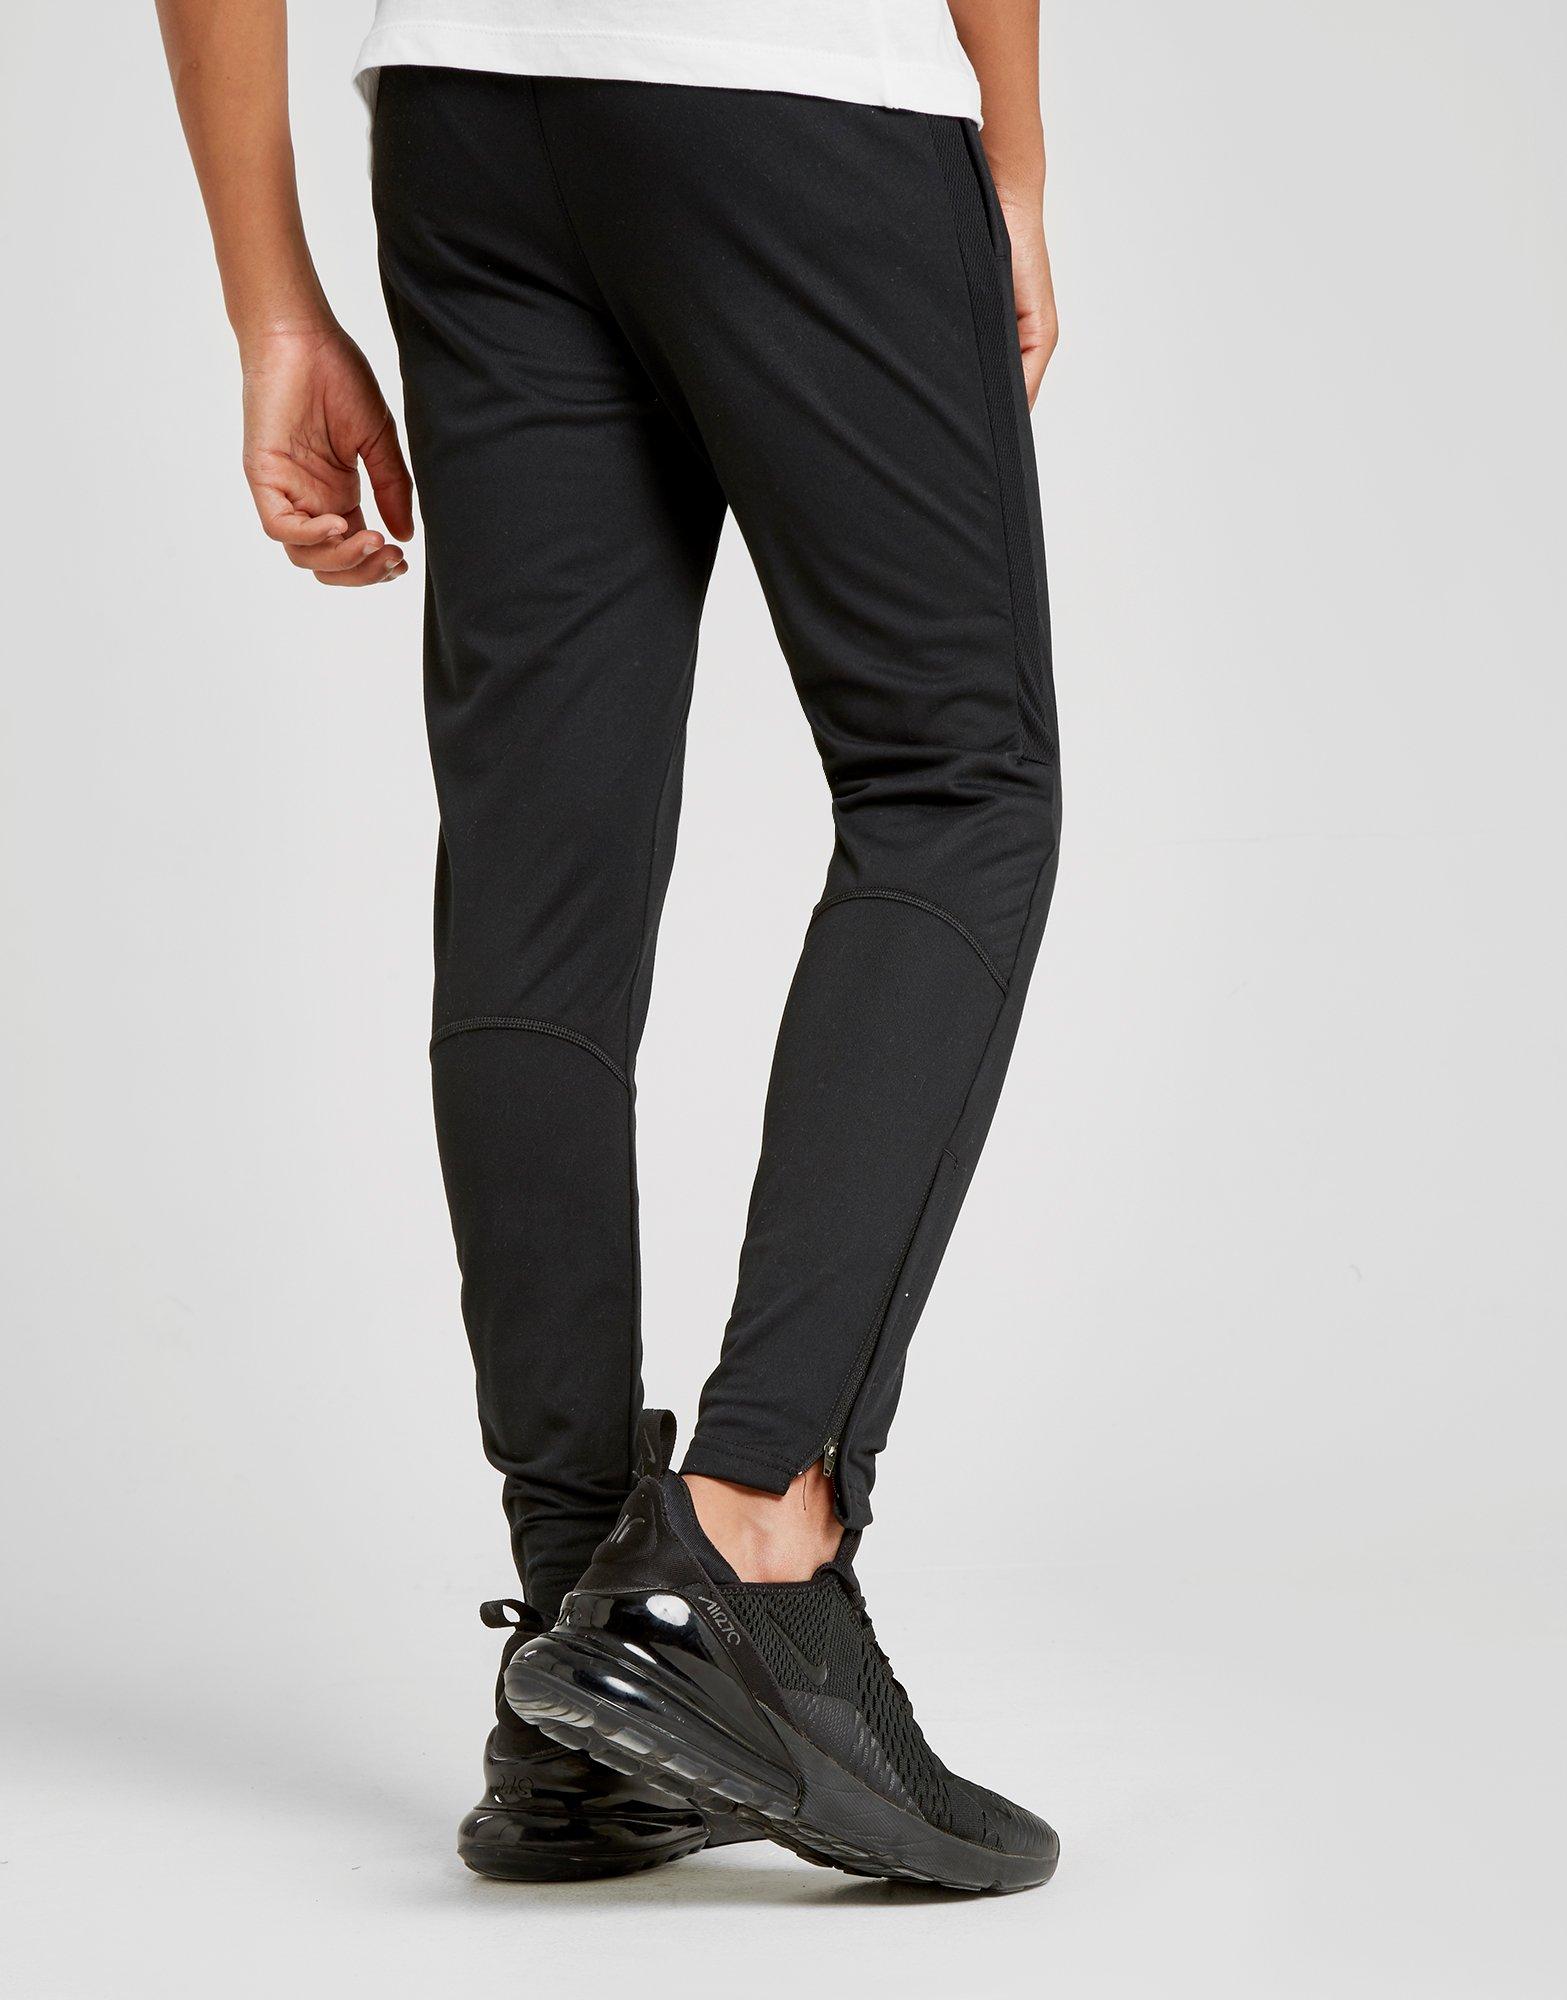 Compra Nike pantalón de chándal Academy júnior en Negro